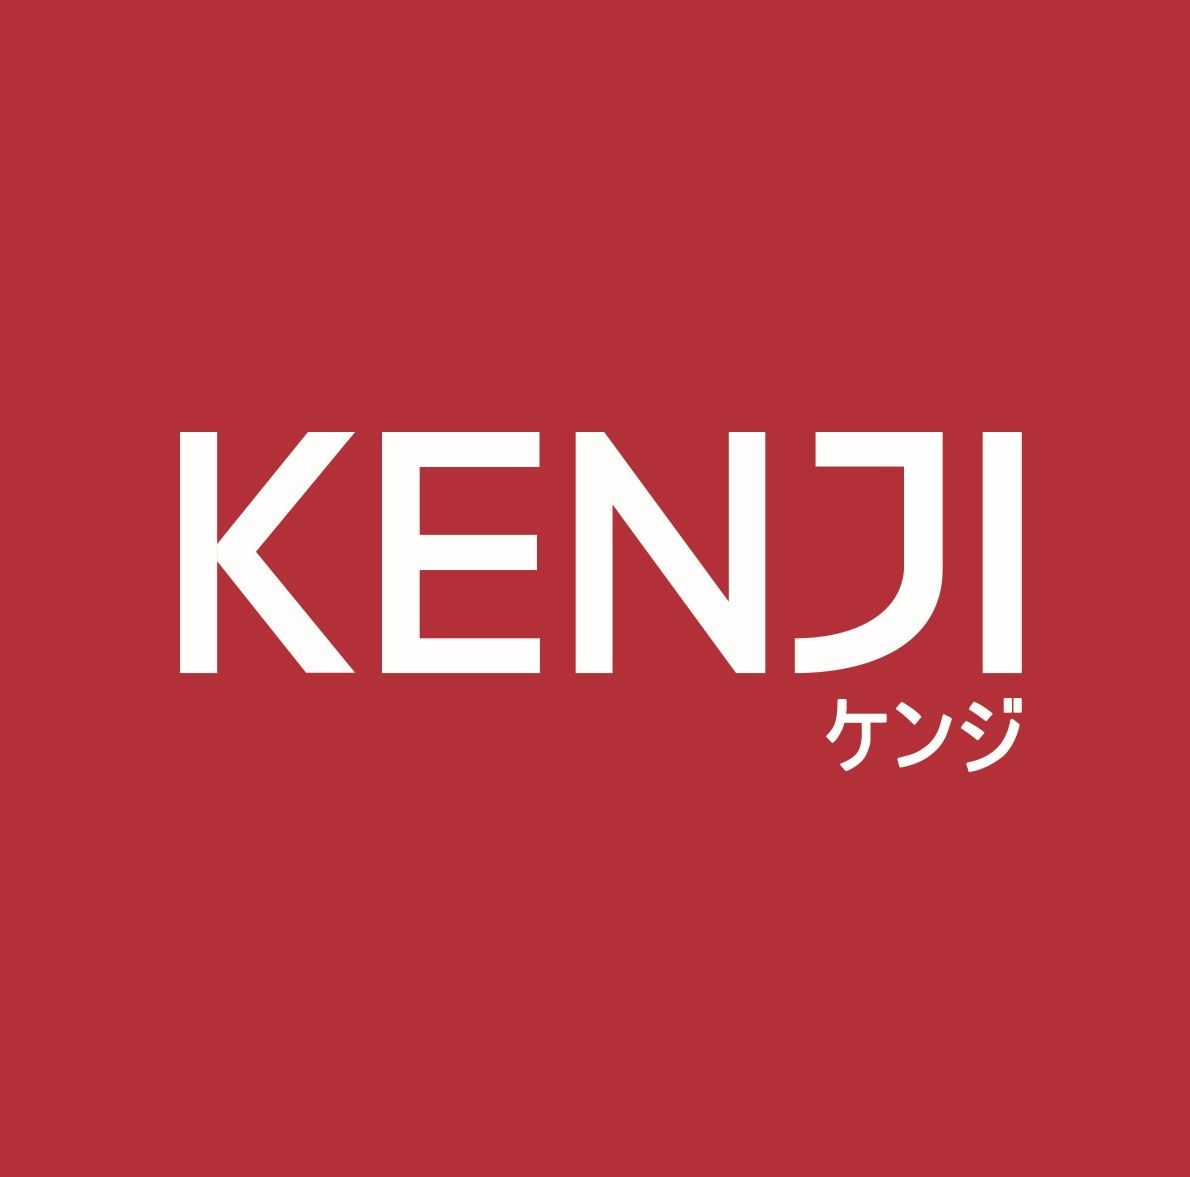 Kenji (UK) Limited